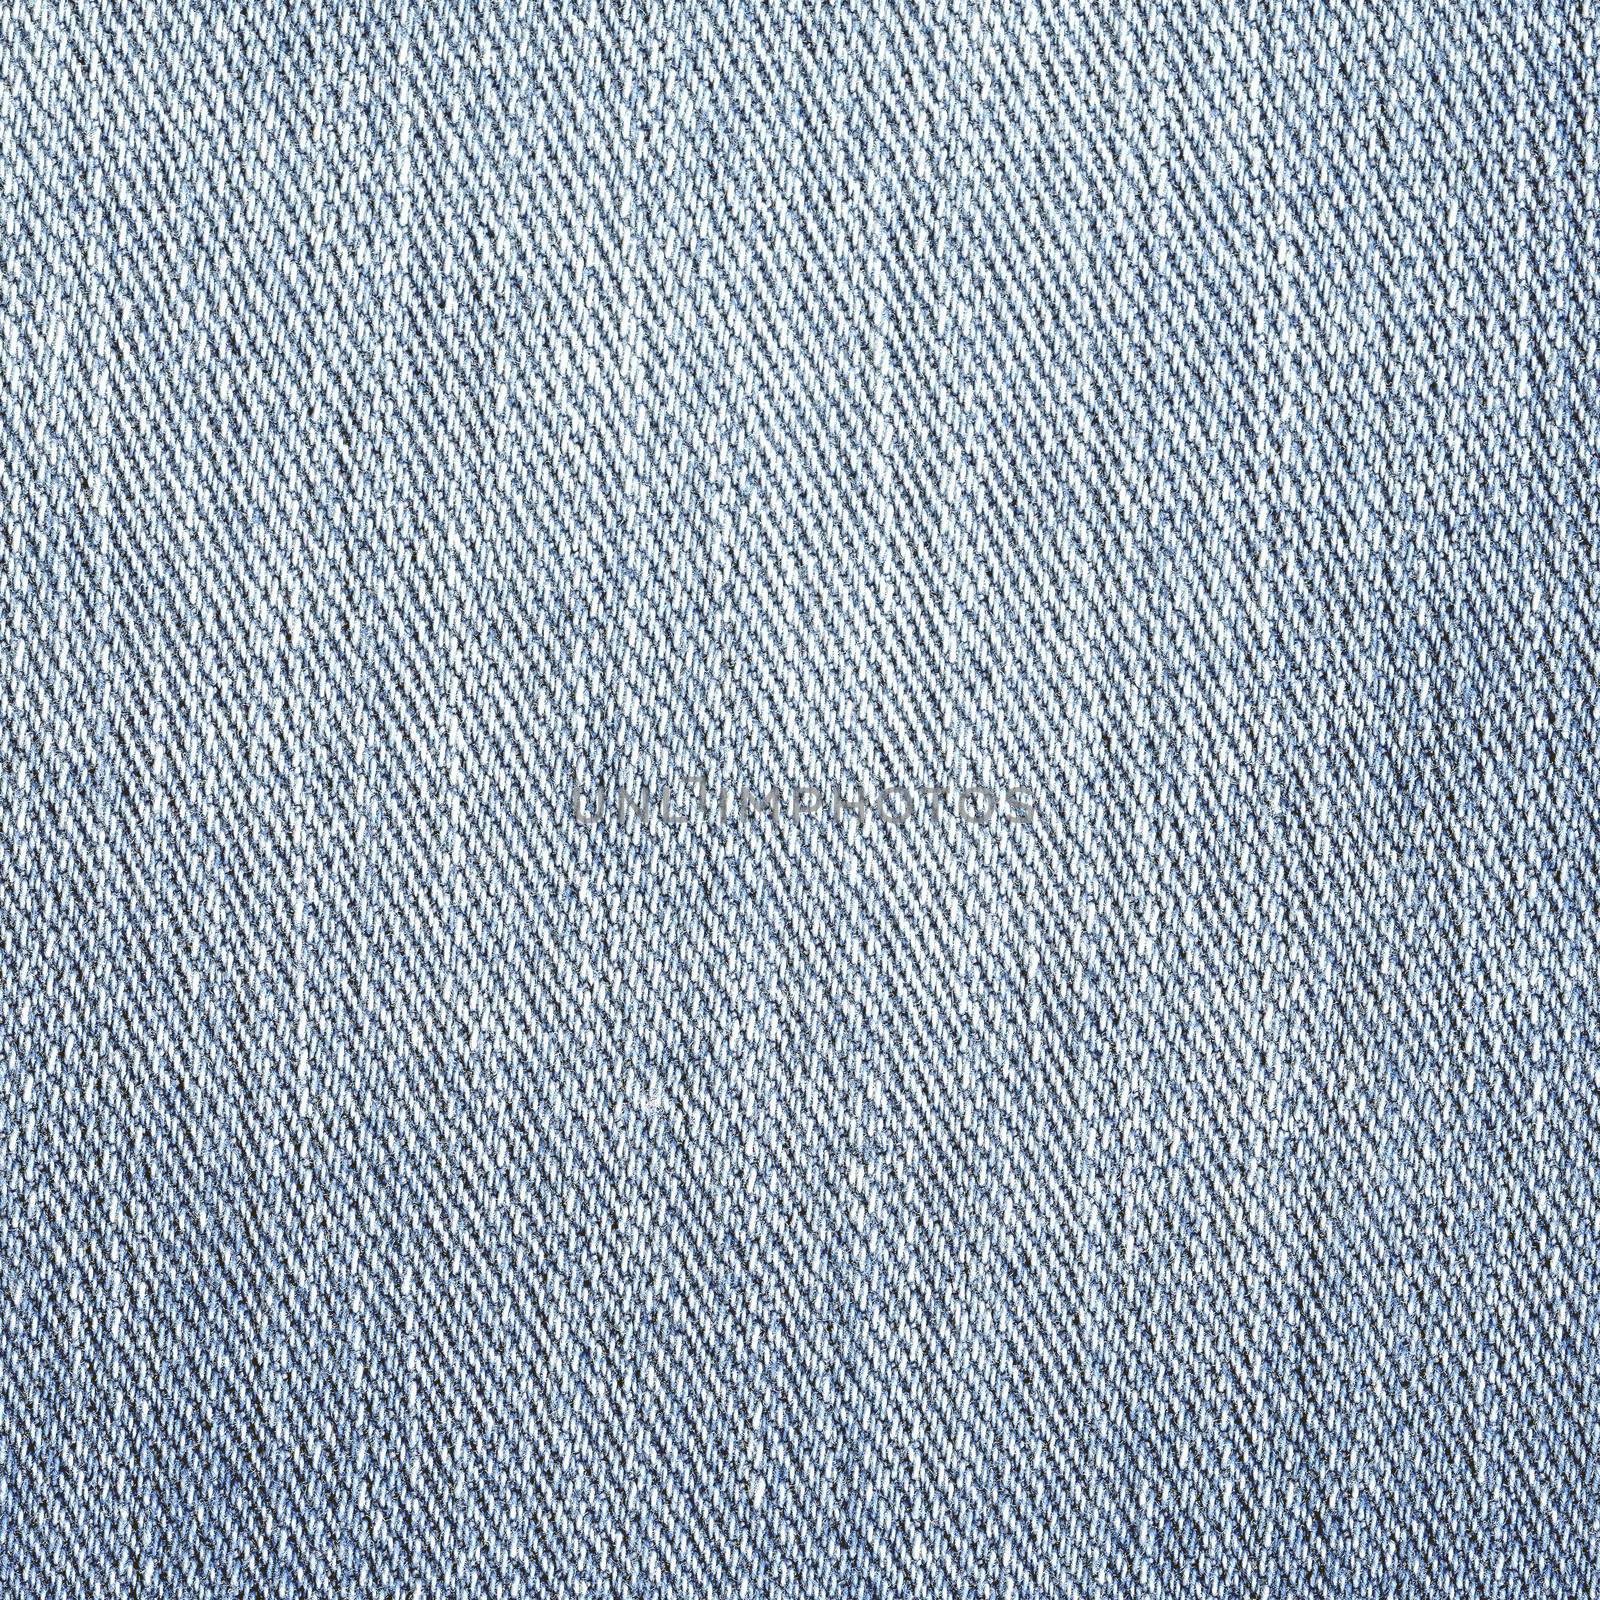 Jeans Denim Texture. Light Gray Blue Color